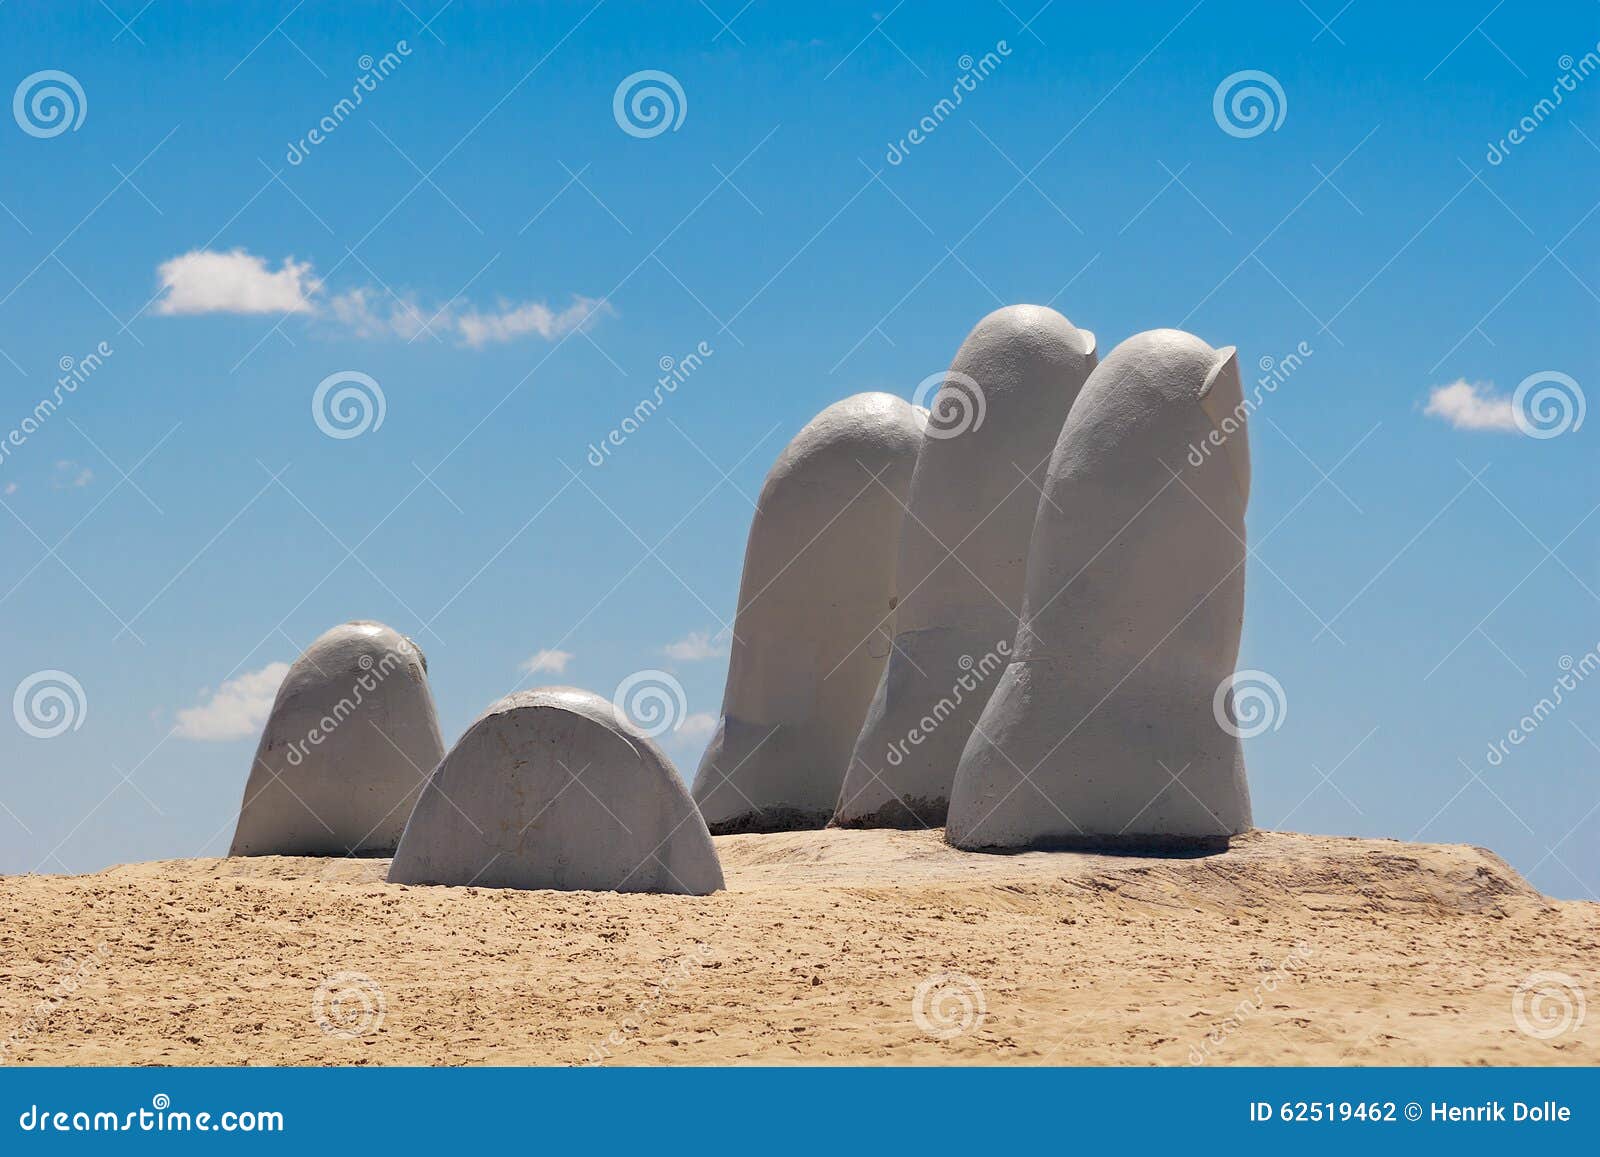 hand sculpture, punta del este uruguay